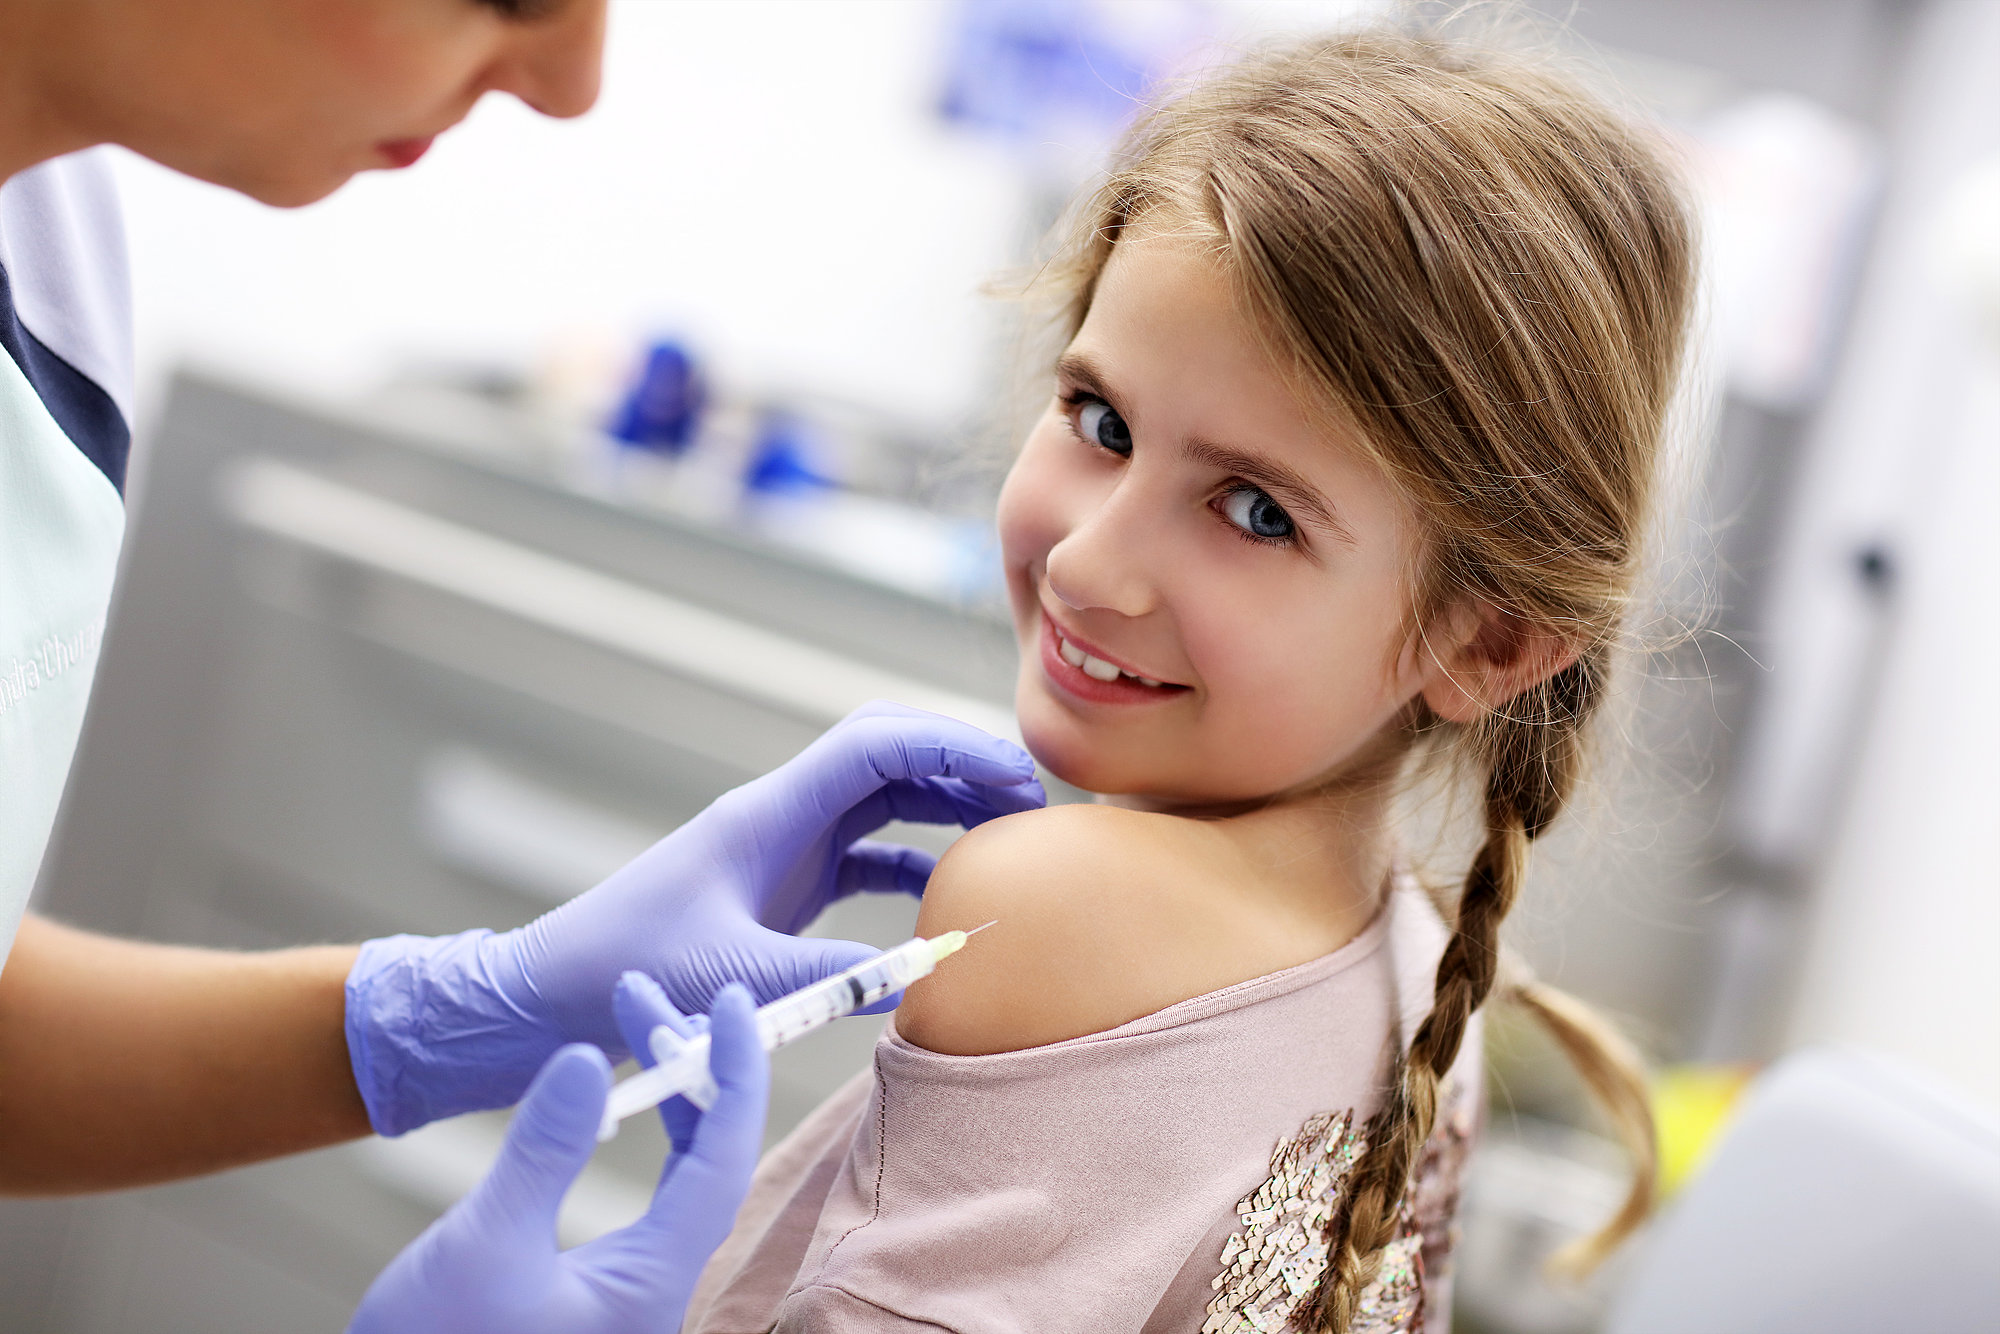 Startbild der Seite Impfaktionen und Impfaufrufe: Ein kleines Mädchen erhält eine Impfung in den Oberarm und lächelt dabei in die Kamera